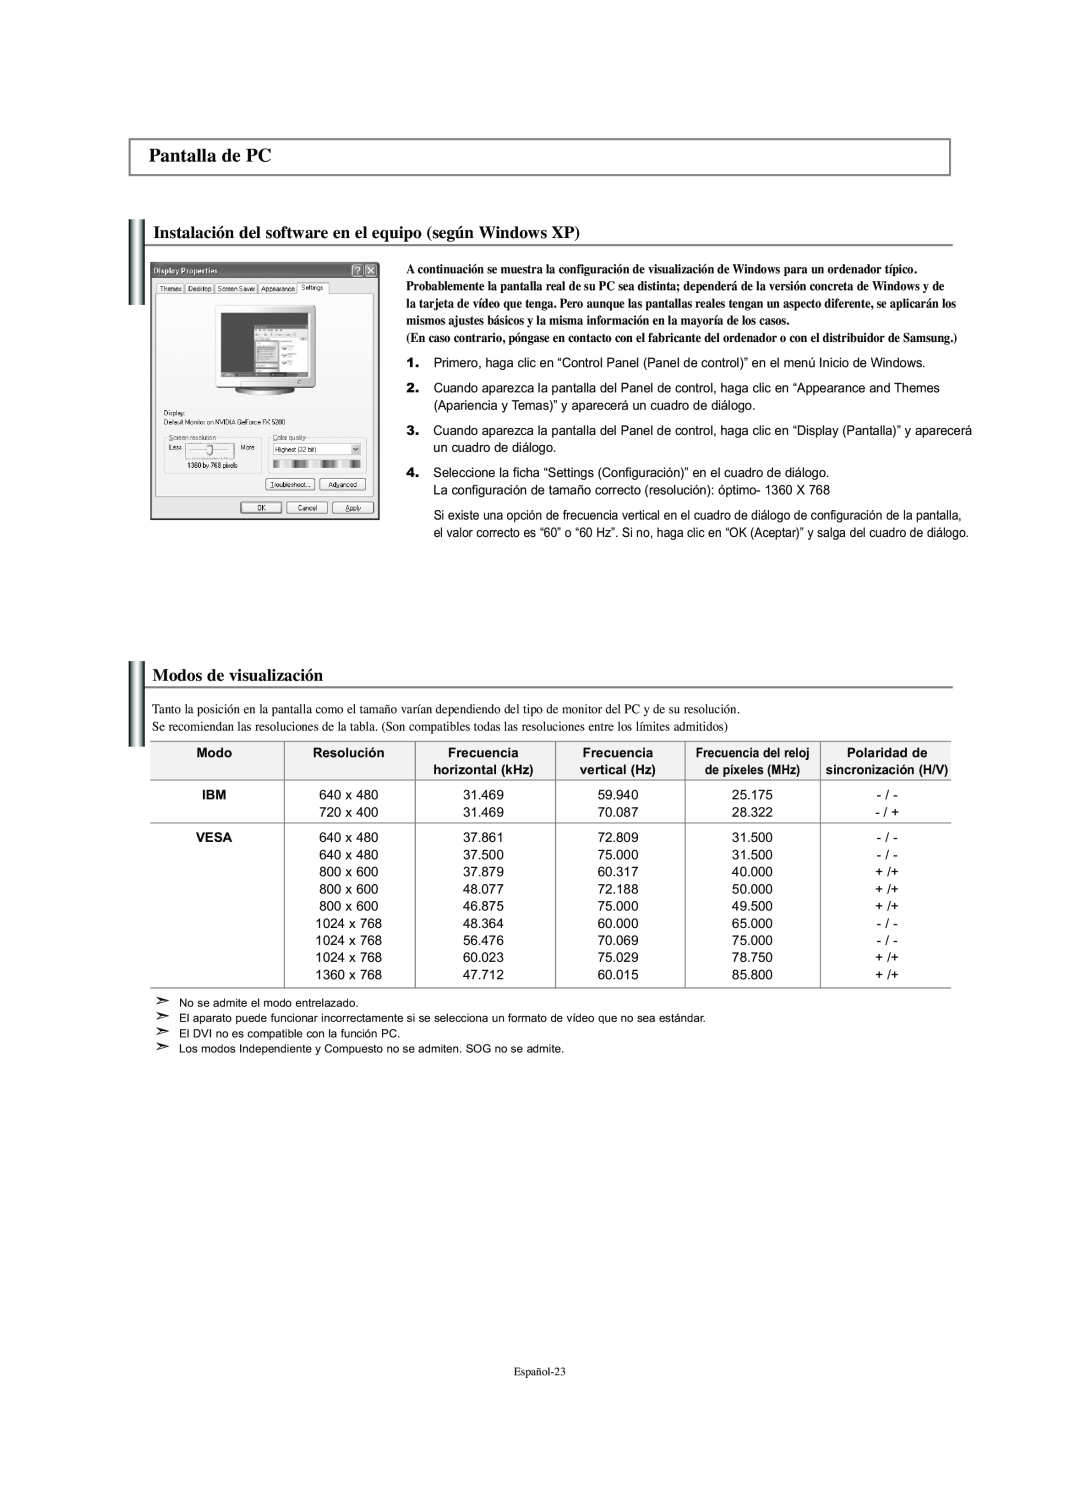 Samsung LN-S2341W manual Pantalla de PC, Instalación del software en el equipo según Windows XP, Modos de visualización 